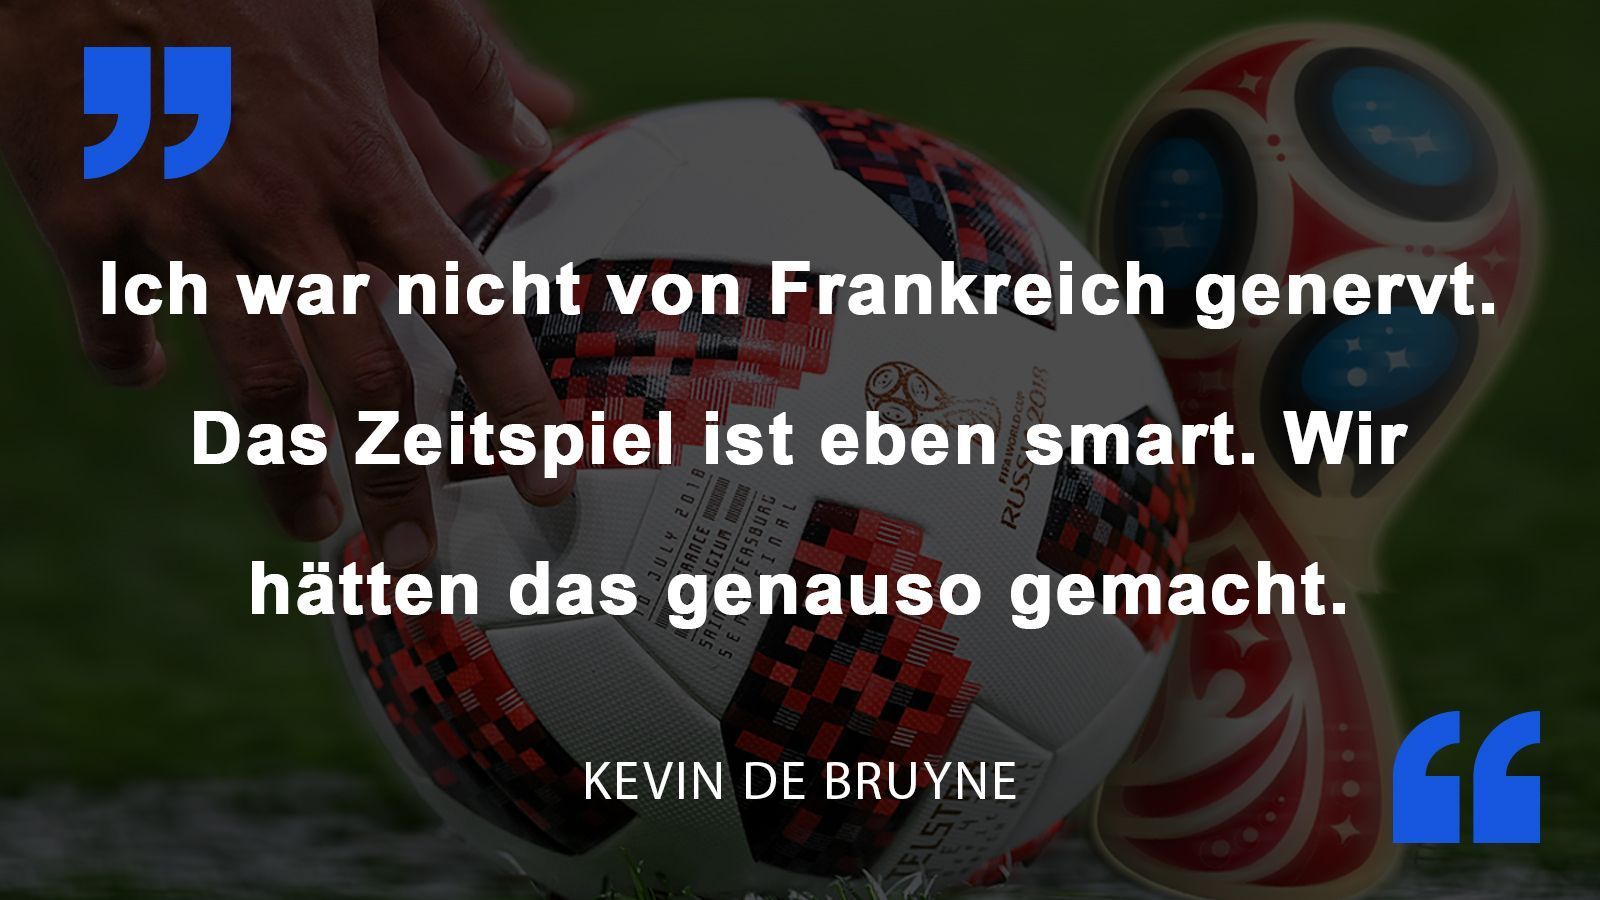 
                <strong>Kevin De Bruyne</strong><br>
                Kevin De Bruyne über das Halbfinale gegen Frankreich. Während seine Mitspieler über die Spielweise der Franzosen lästerten, relativierte der Spieler von Manchester City die Aussagen.
              